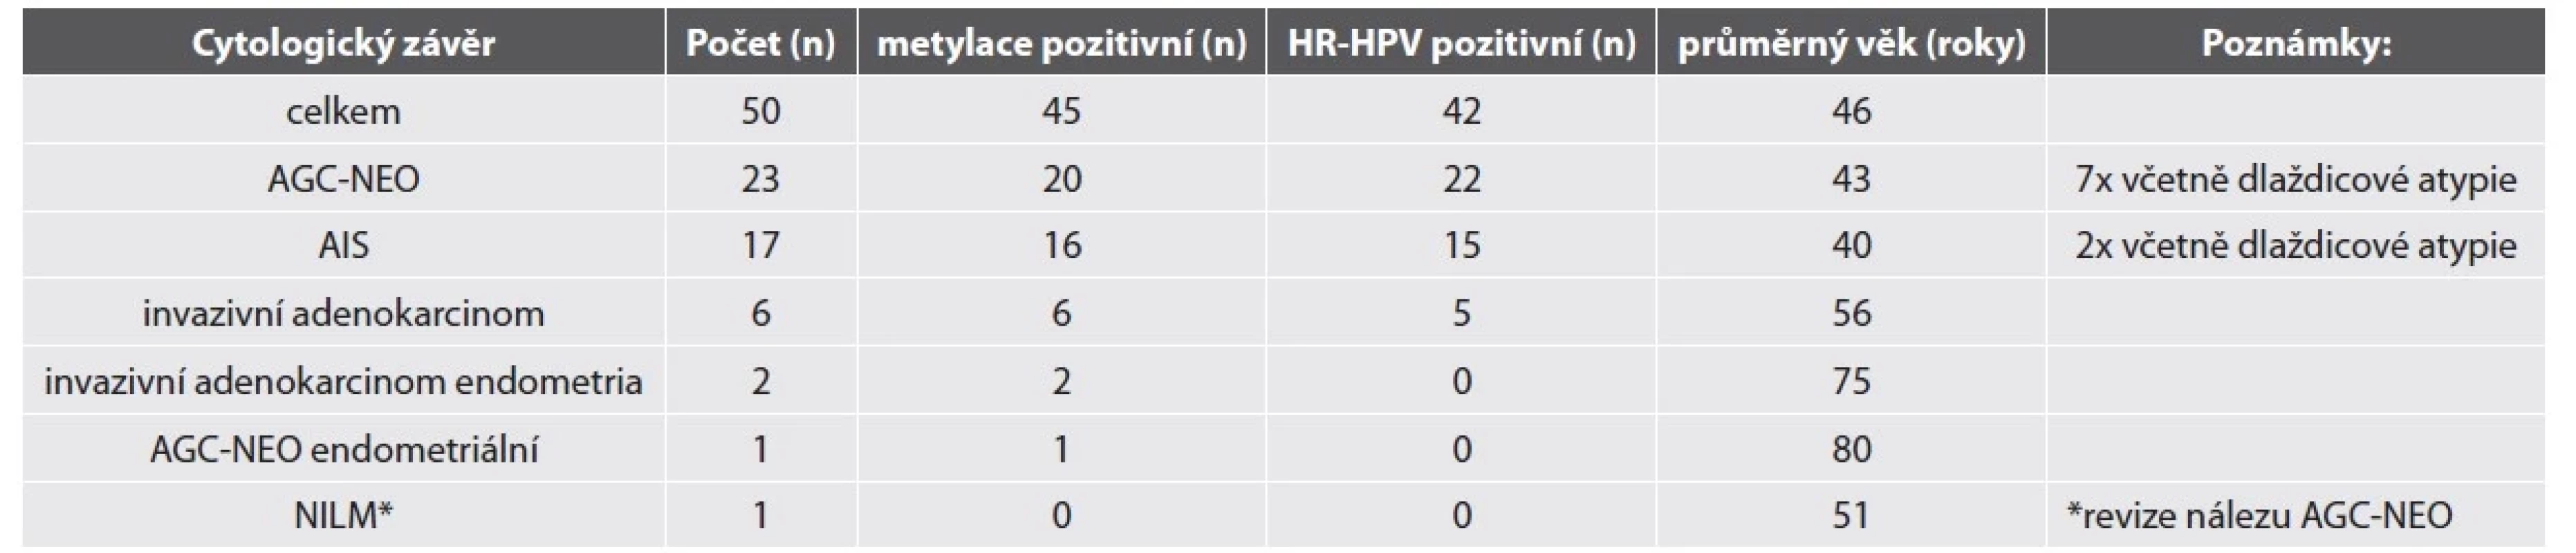 Výsledky CV cytologie, metylačního testu a HR-HPV detekce u žen se žlázovou atypií v LBC.